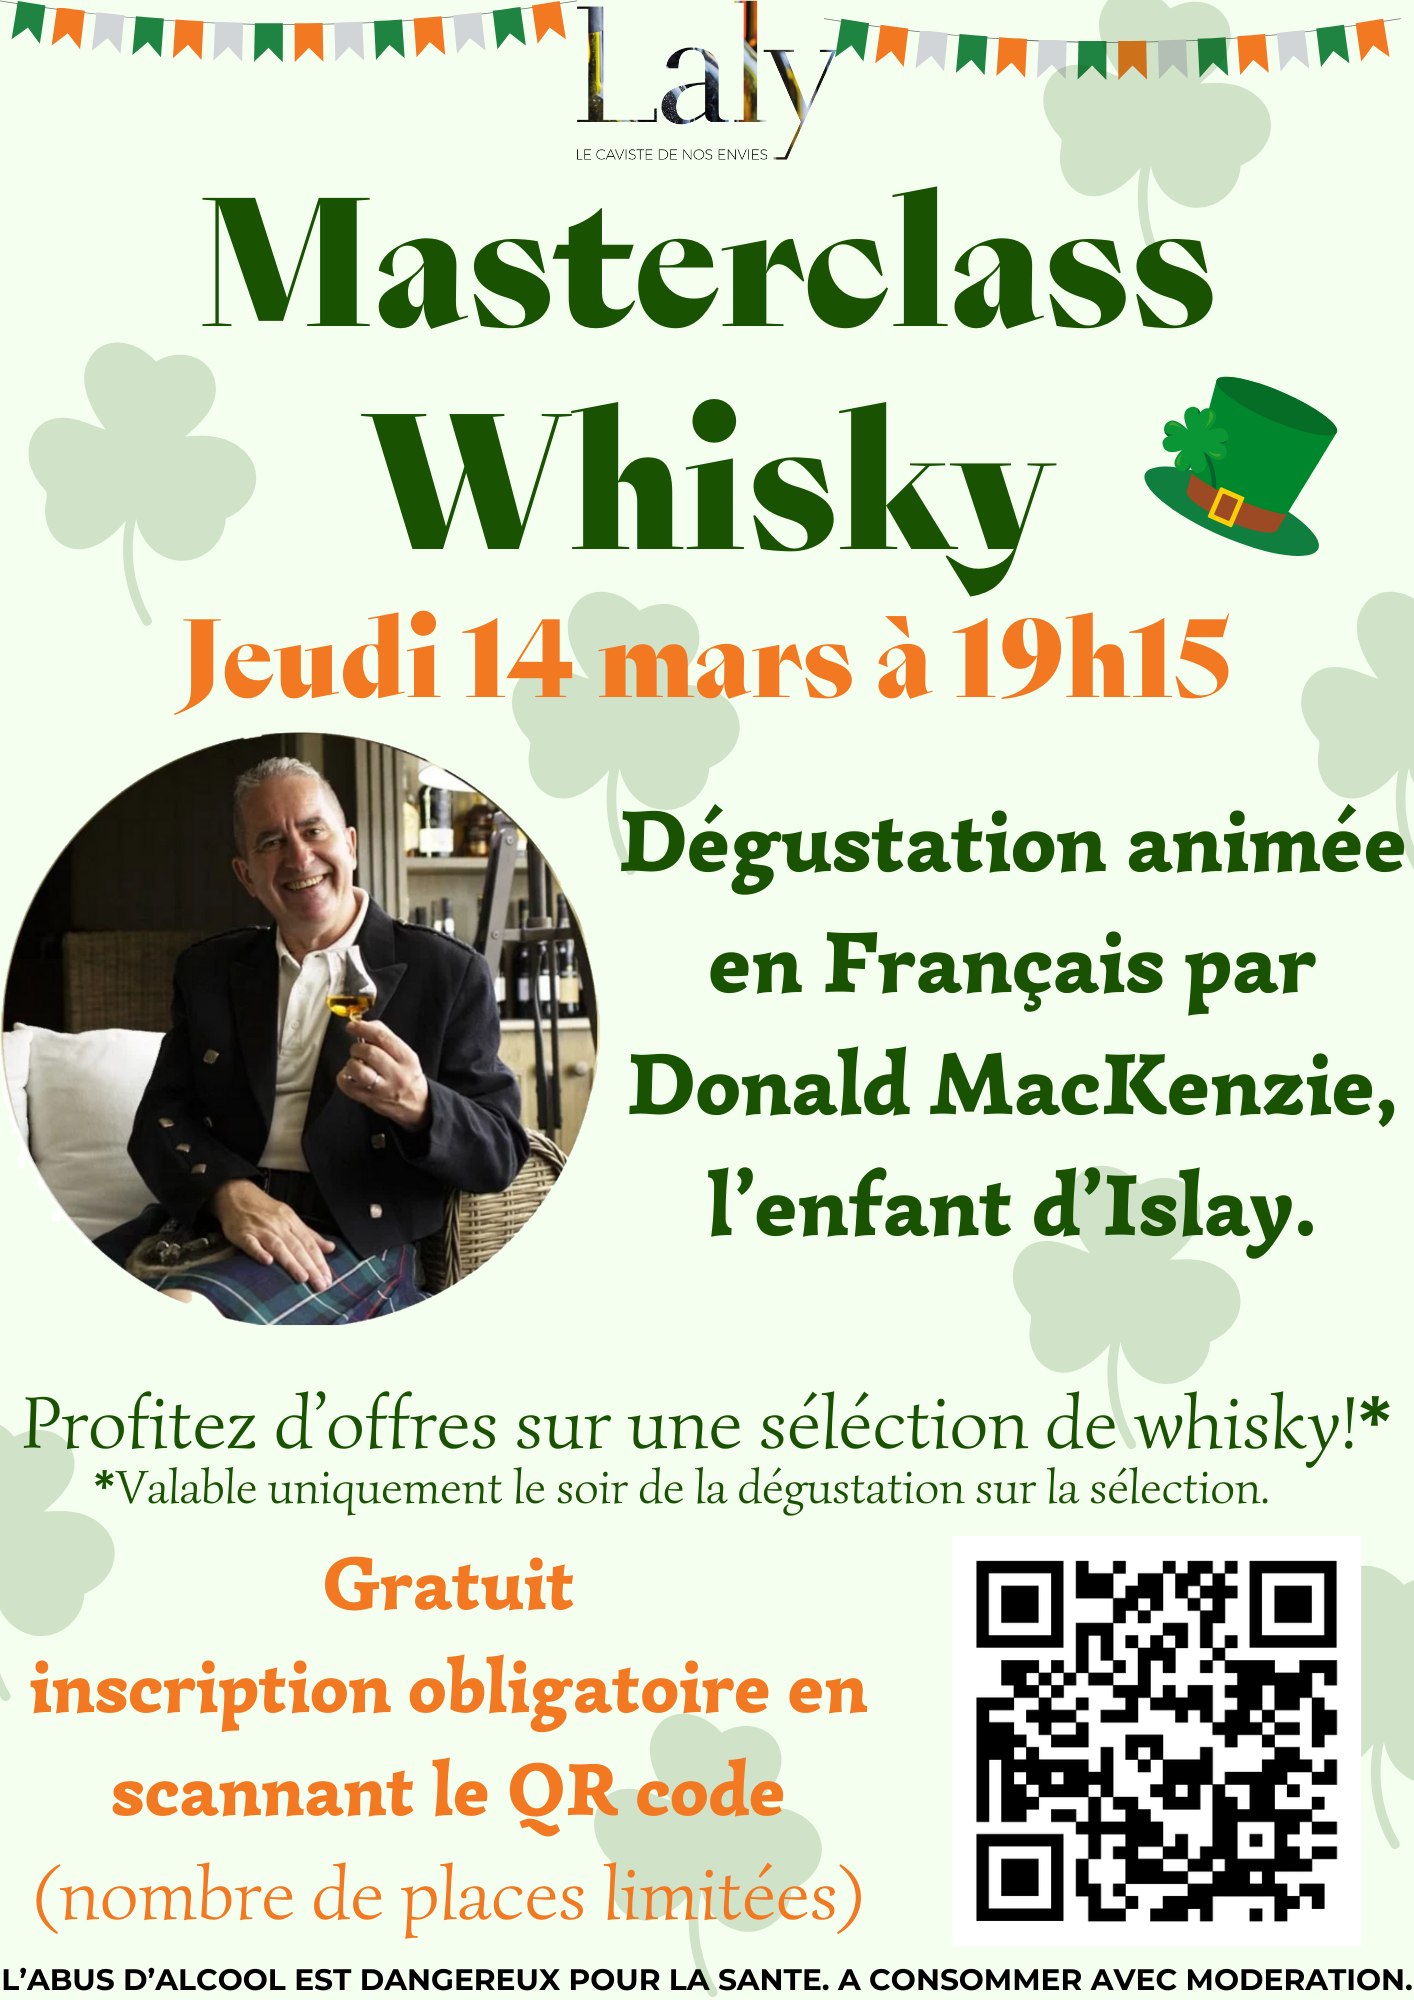 https://www.vins-laly.com/cms/12/degustation-whisky